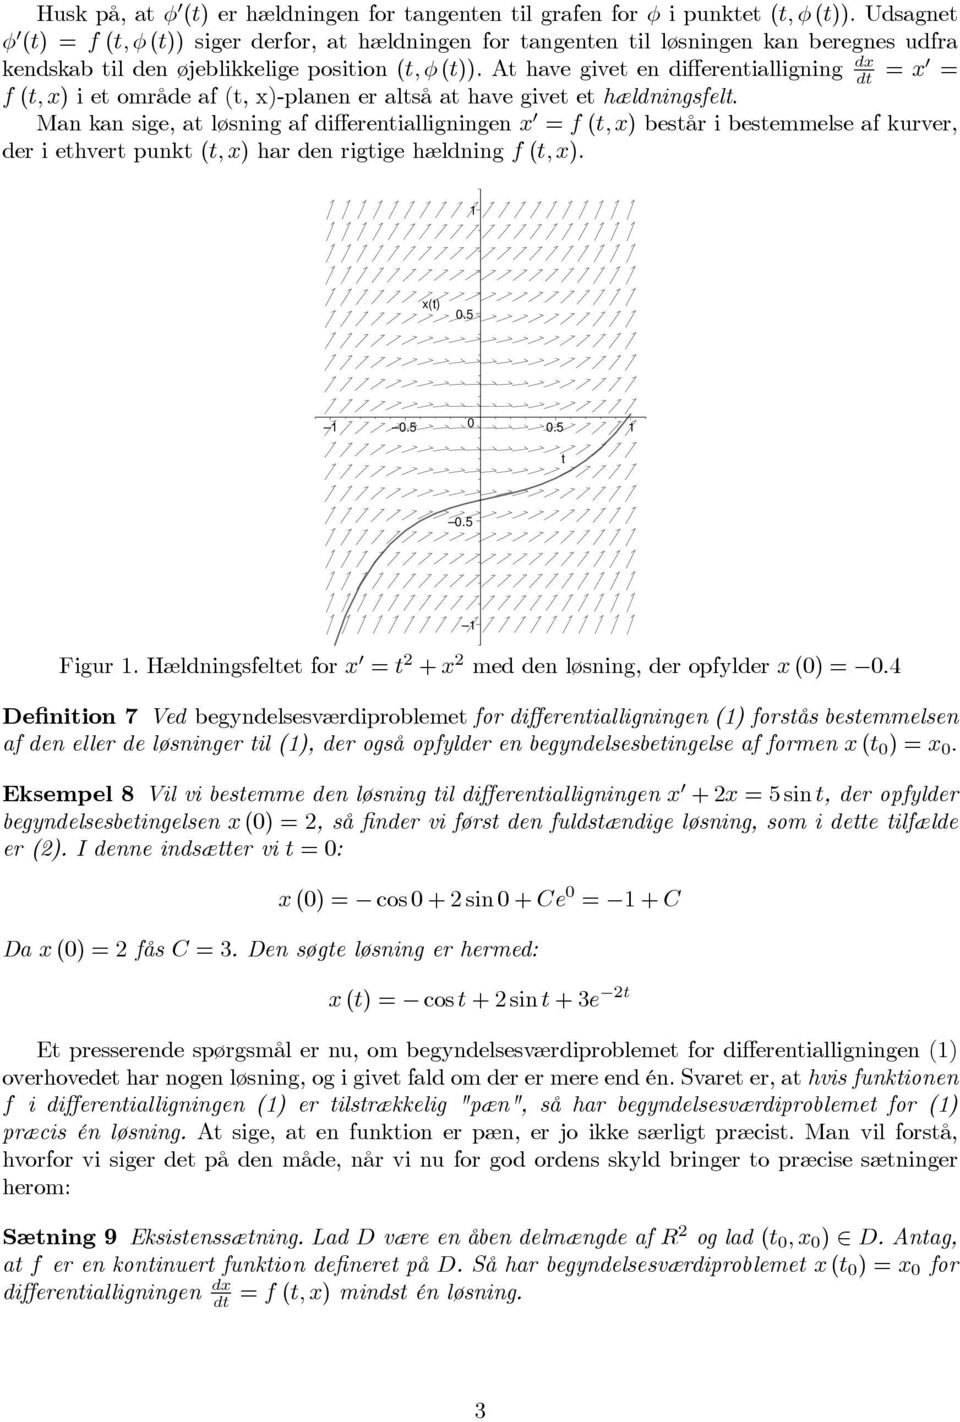 At have givet en differentialligning dt =x = f(t,x)ietområdeaf(t,x)-planeneraltsåathavegivetethældningsfelt.